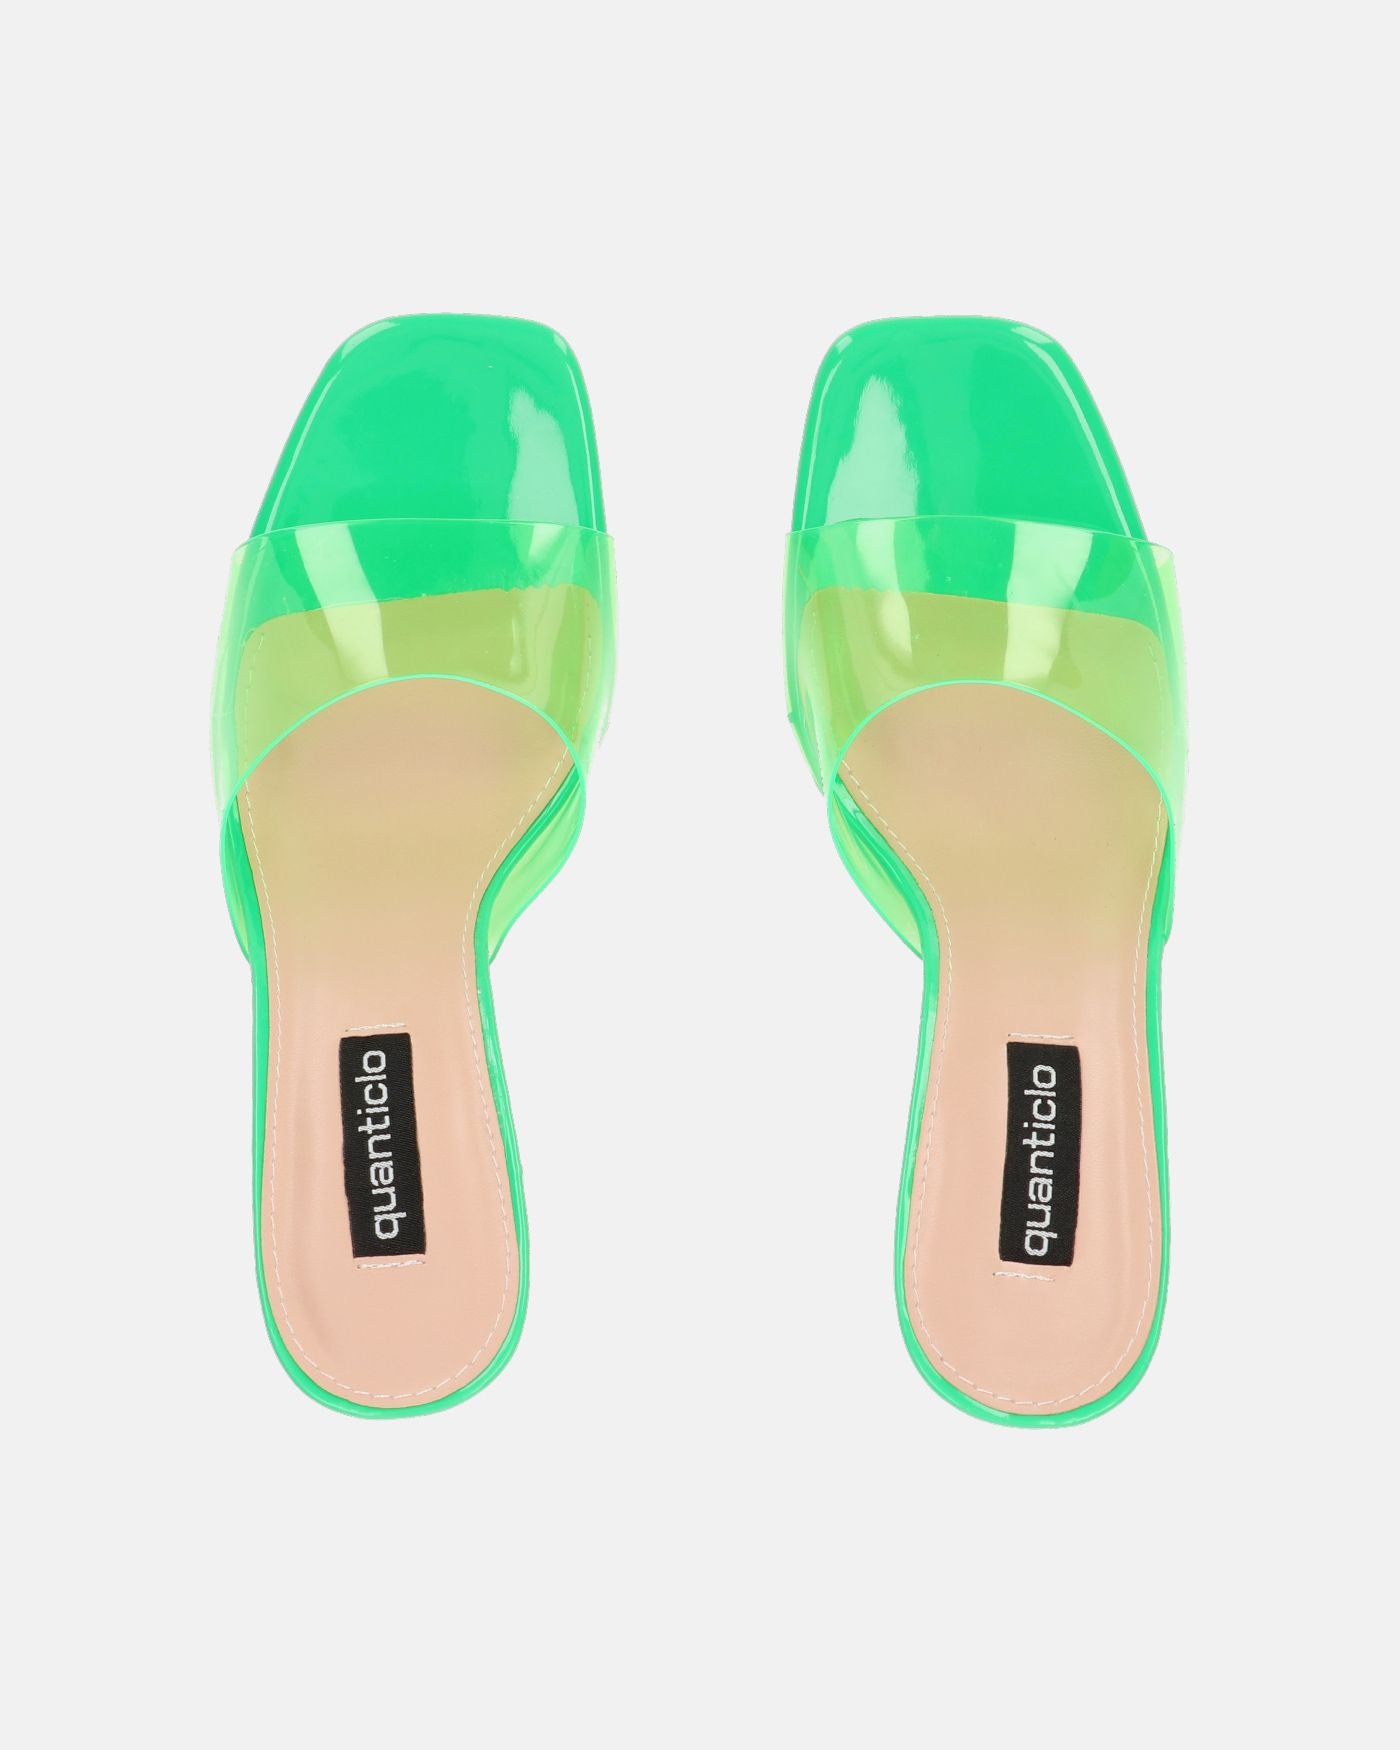 FIAMMA - sandalia de tacón en perspex verde con suela de PU